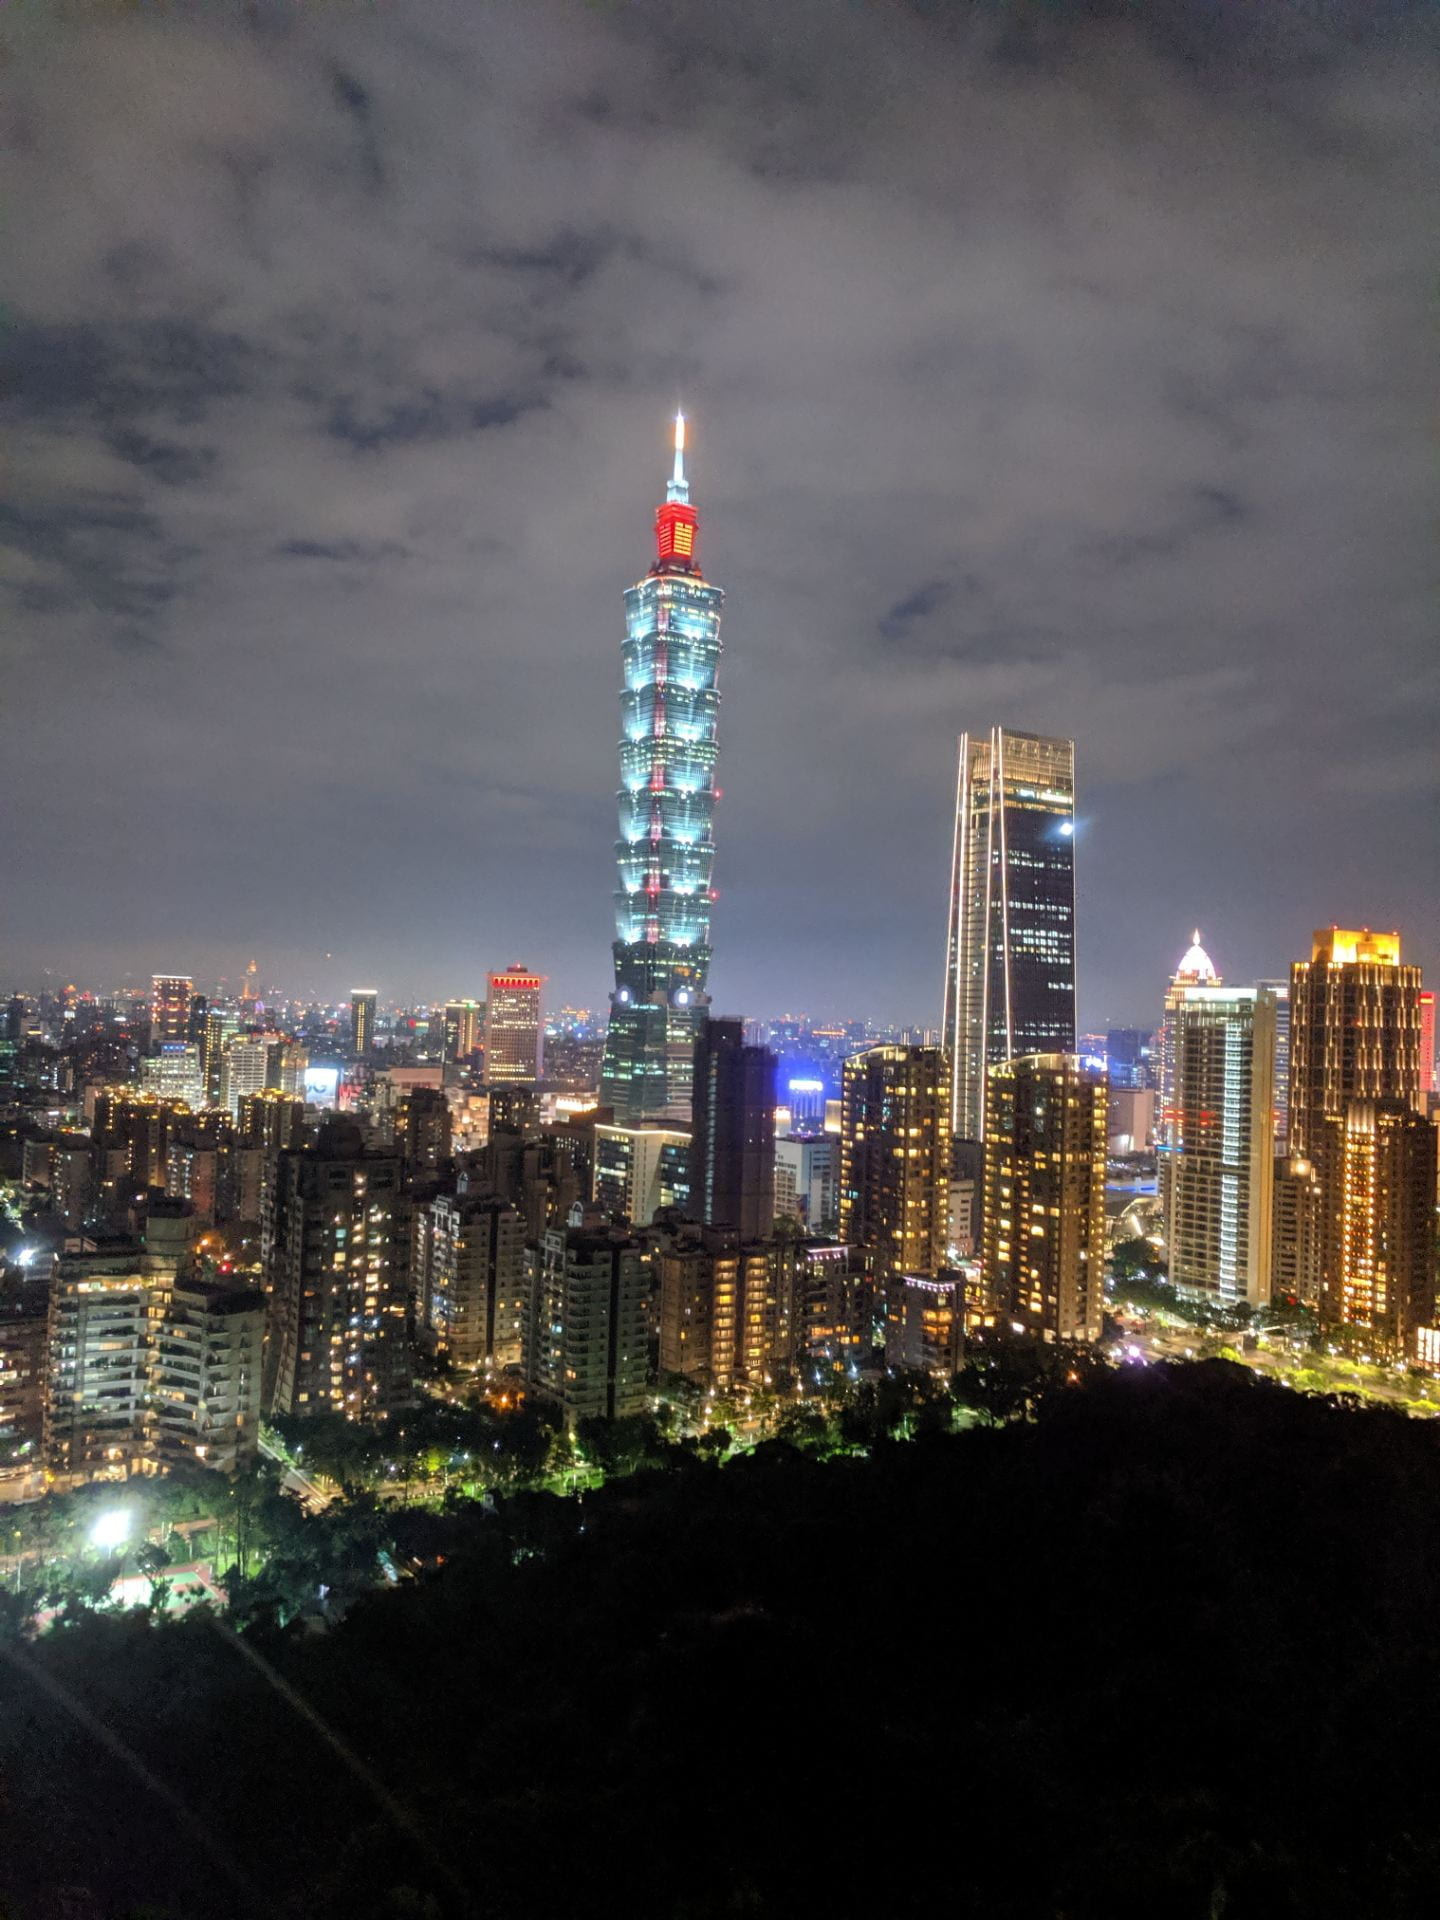 Taipei skyline at night of iconic buildings